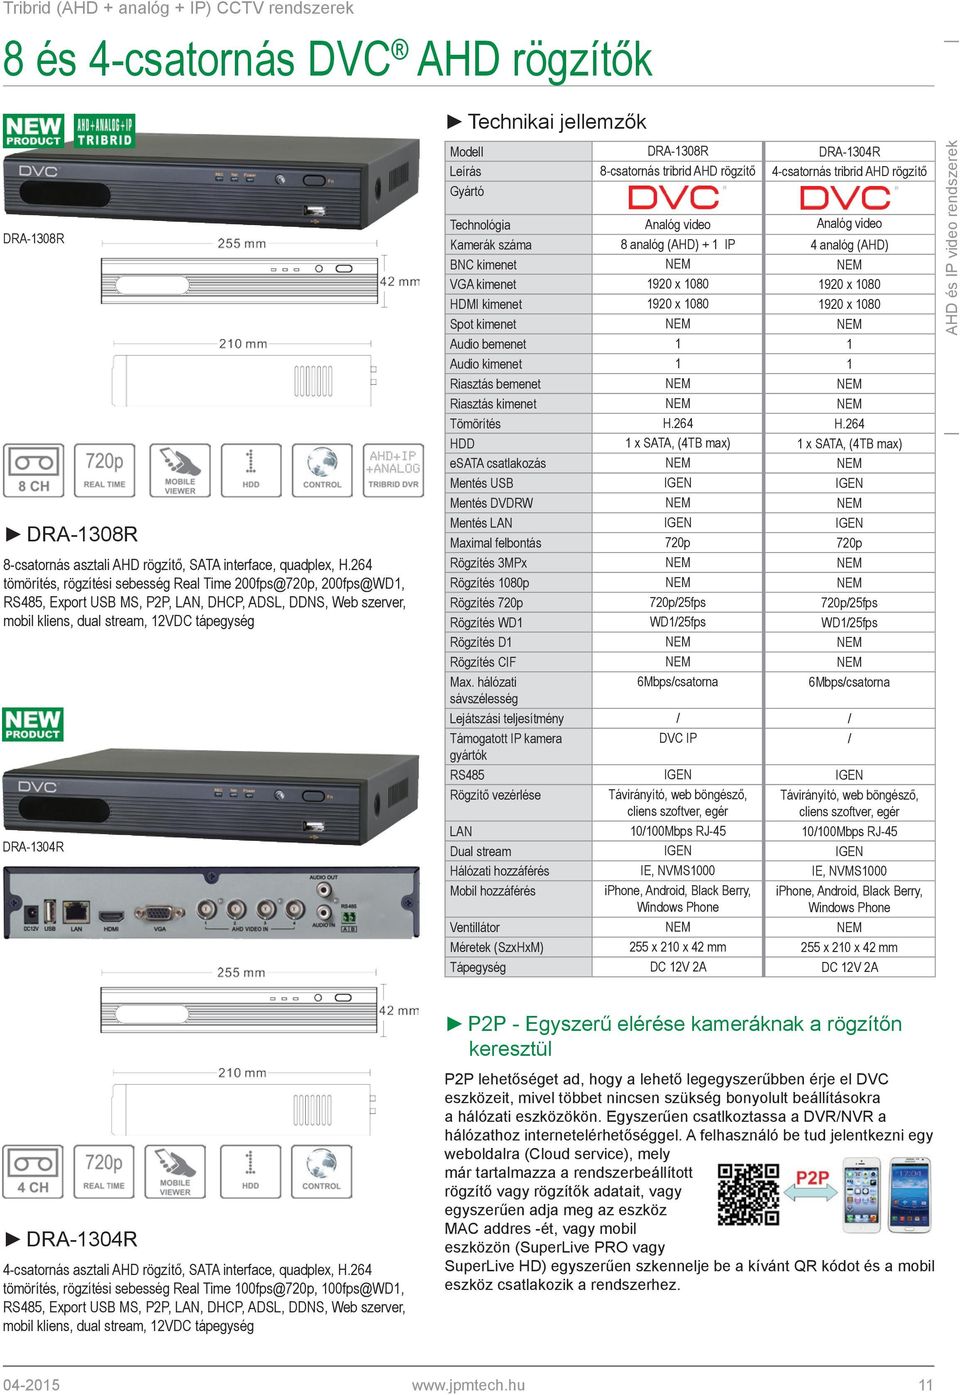 DRA-1308R DRA-1304R Leírás 8-csatornás tribrid AHD rögzítő 4-csatornás tribrid AHD rögzítő Technológia Analóg video Analóg video Kamerák száma 8 analóg (AHD) + 1 IP 4 analóg (AHD) BNC kimenet NEM NEM